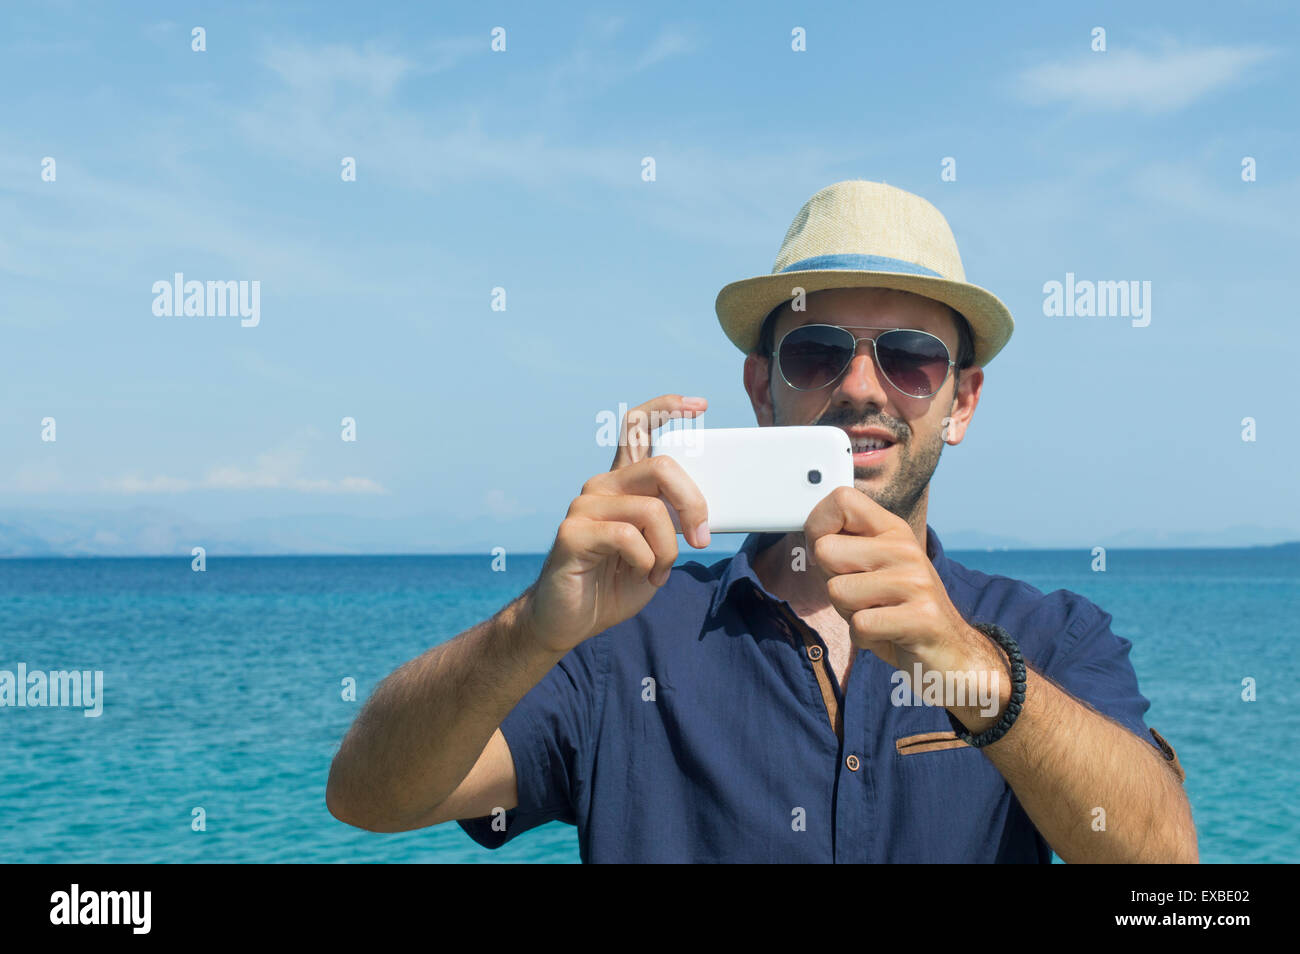 El hombre tomando fotos con su teléfono celular en el mar Foto de stock